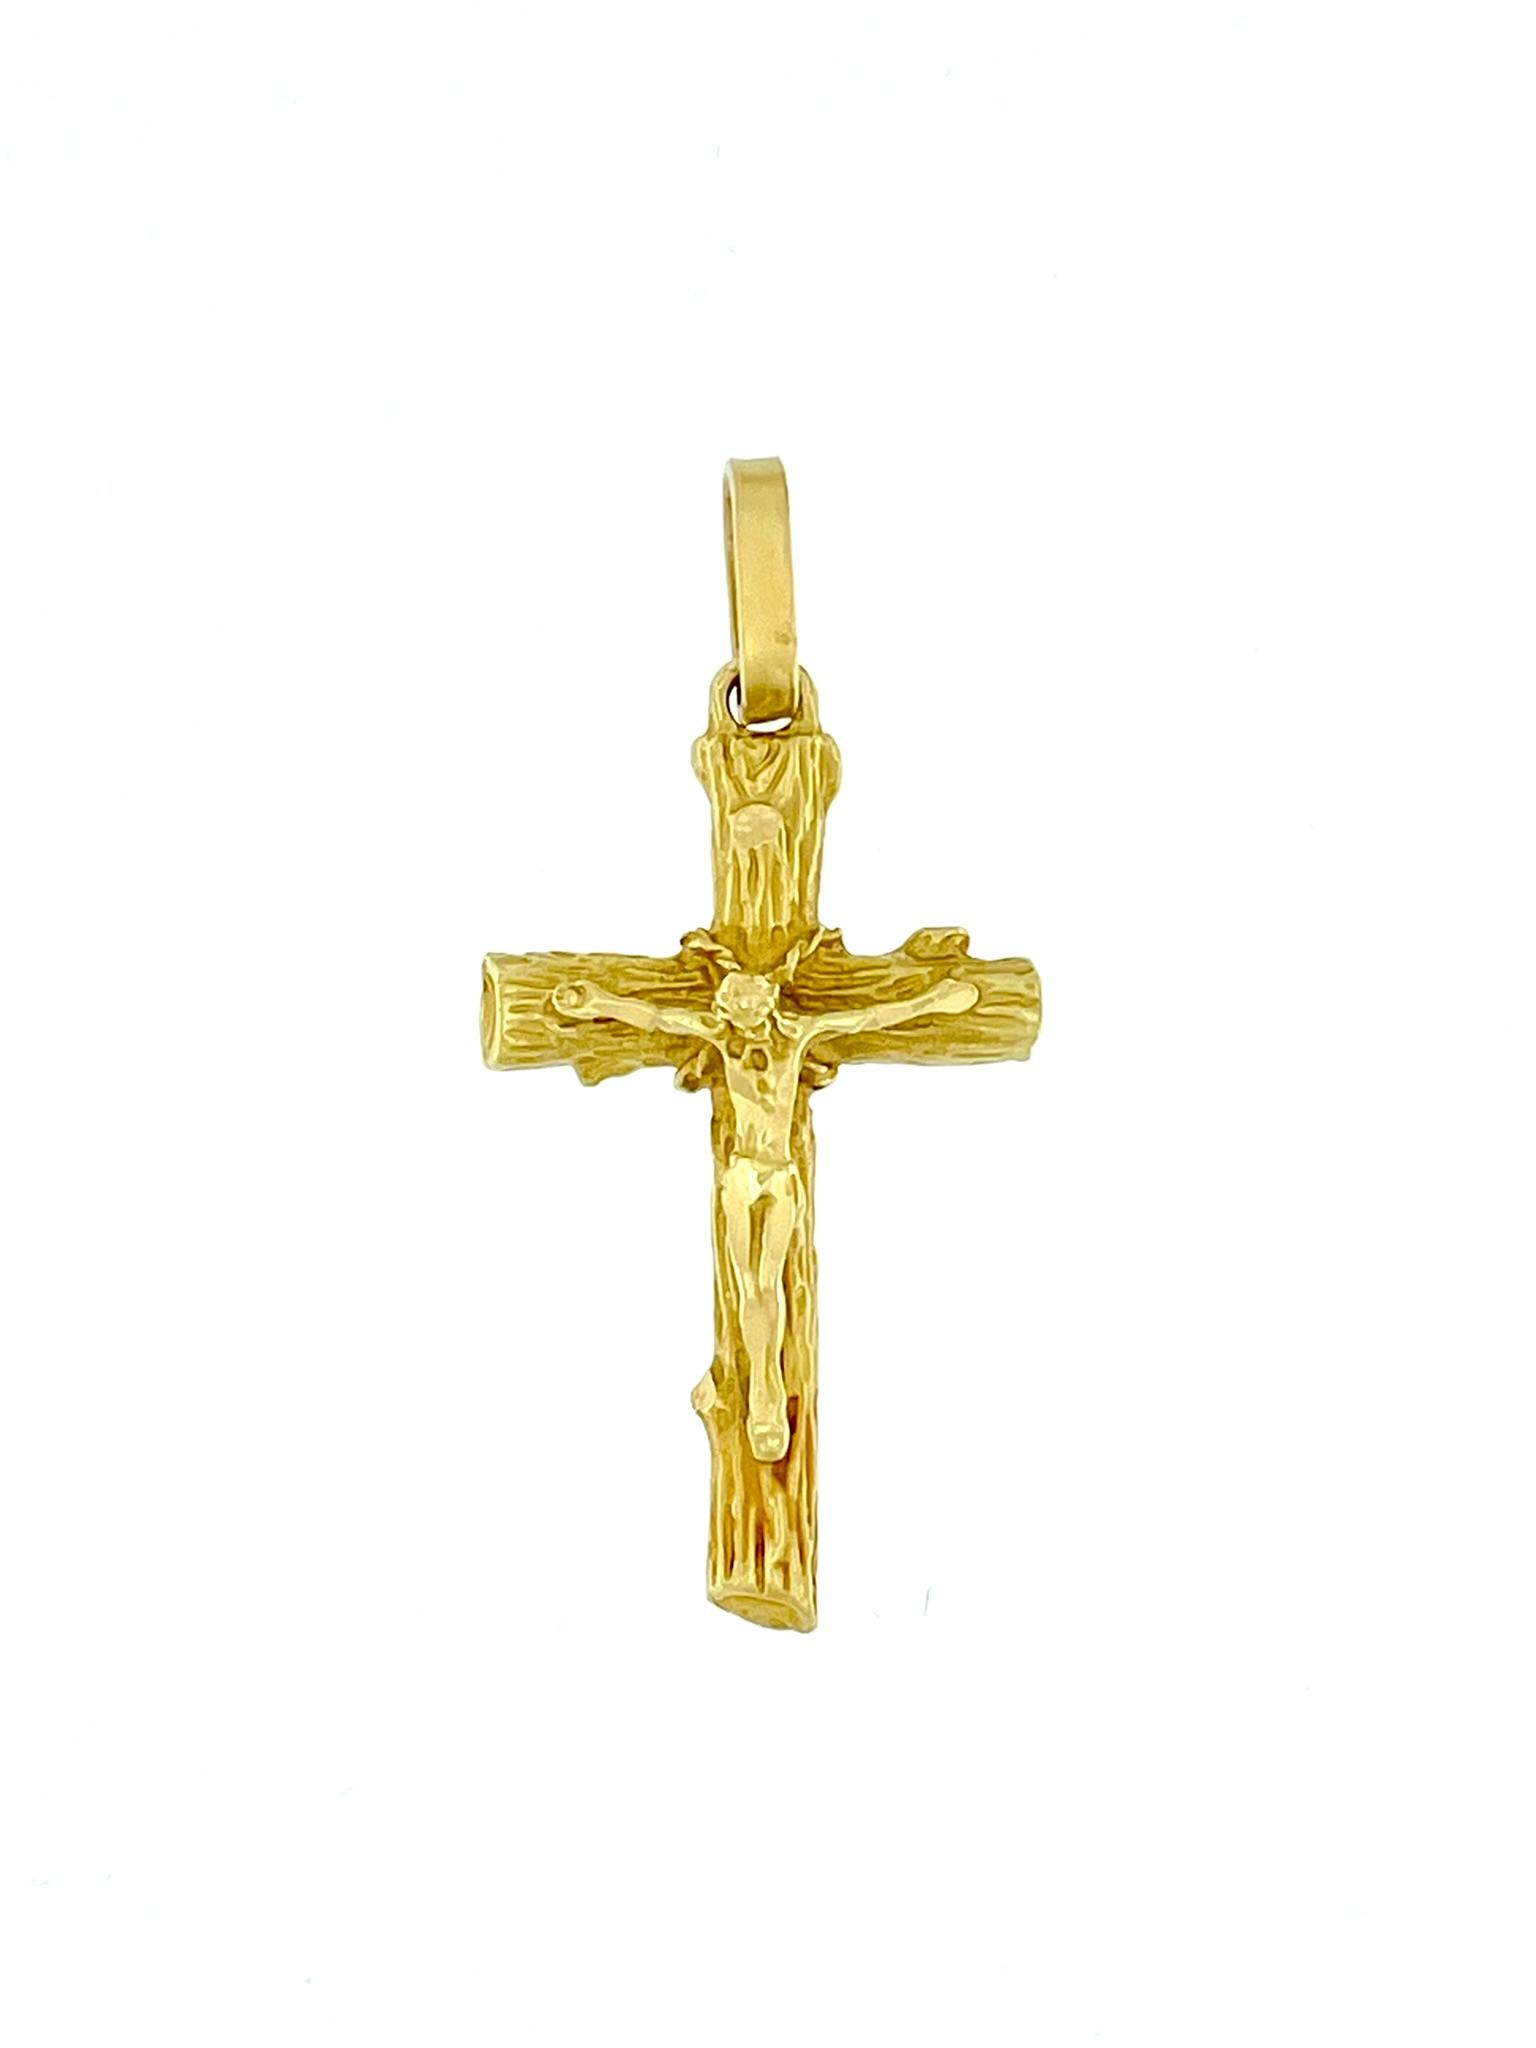 Ce crucifix italien vintage est un bijou religieux captivant en or jaune lustré de 18 carats. Le crucifix se distingue par son relief unique et complexe, habilement exécuté pour ressembler à la texture d'un tronc d'arbre. La représentation